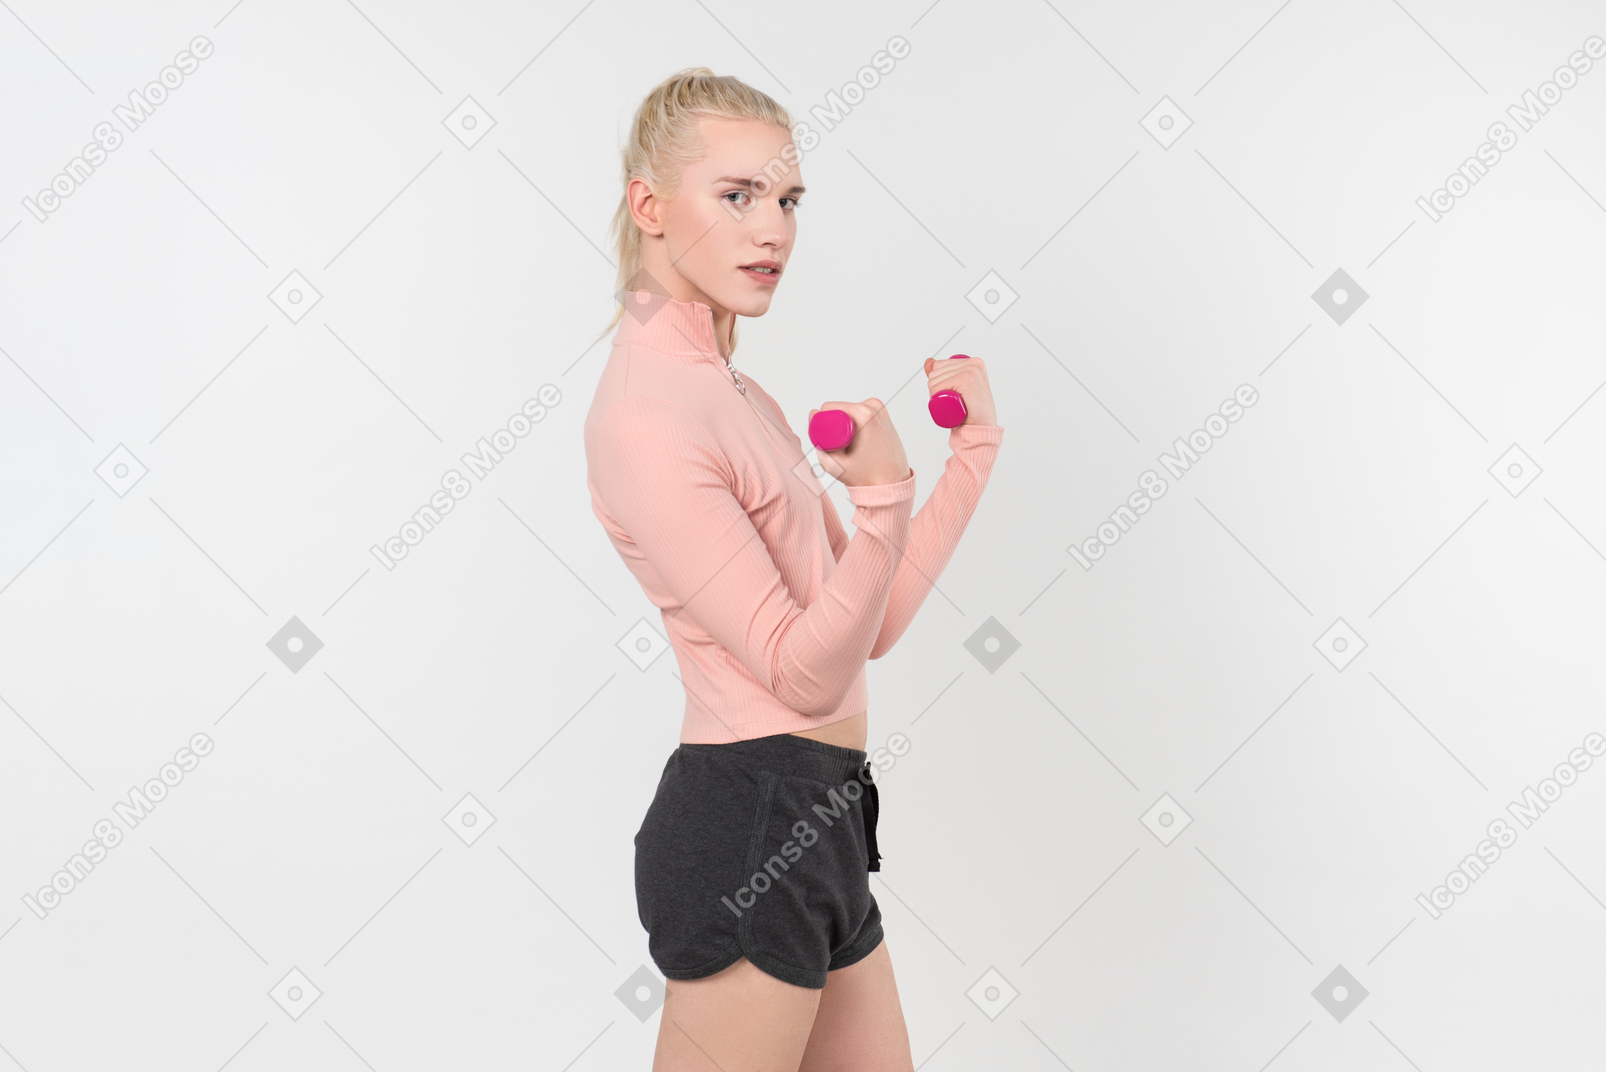 Junge blonde person im schwarzen und rosafarbenen outfit, das mit sporteinzelteilen gegen einen hellgrauen hintergrund aufwirft